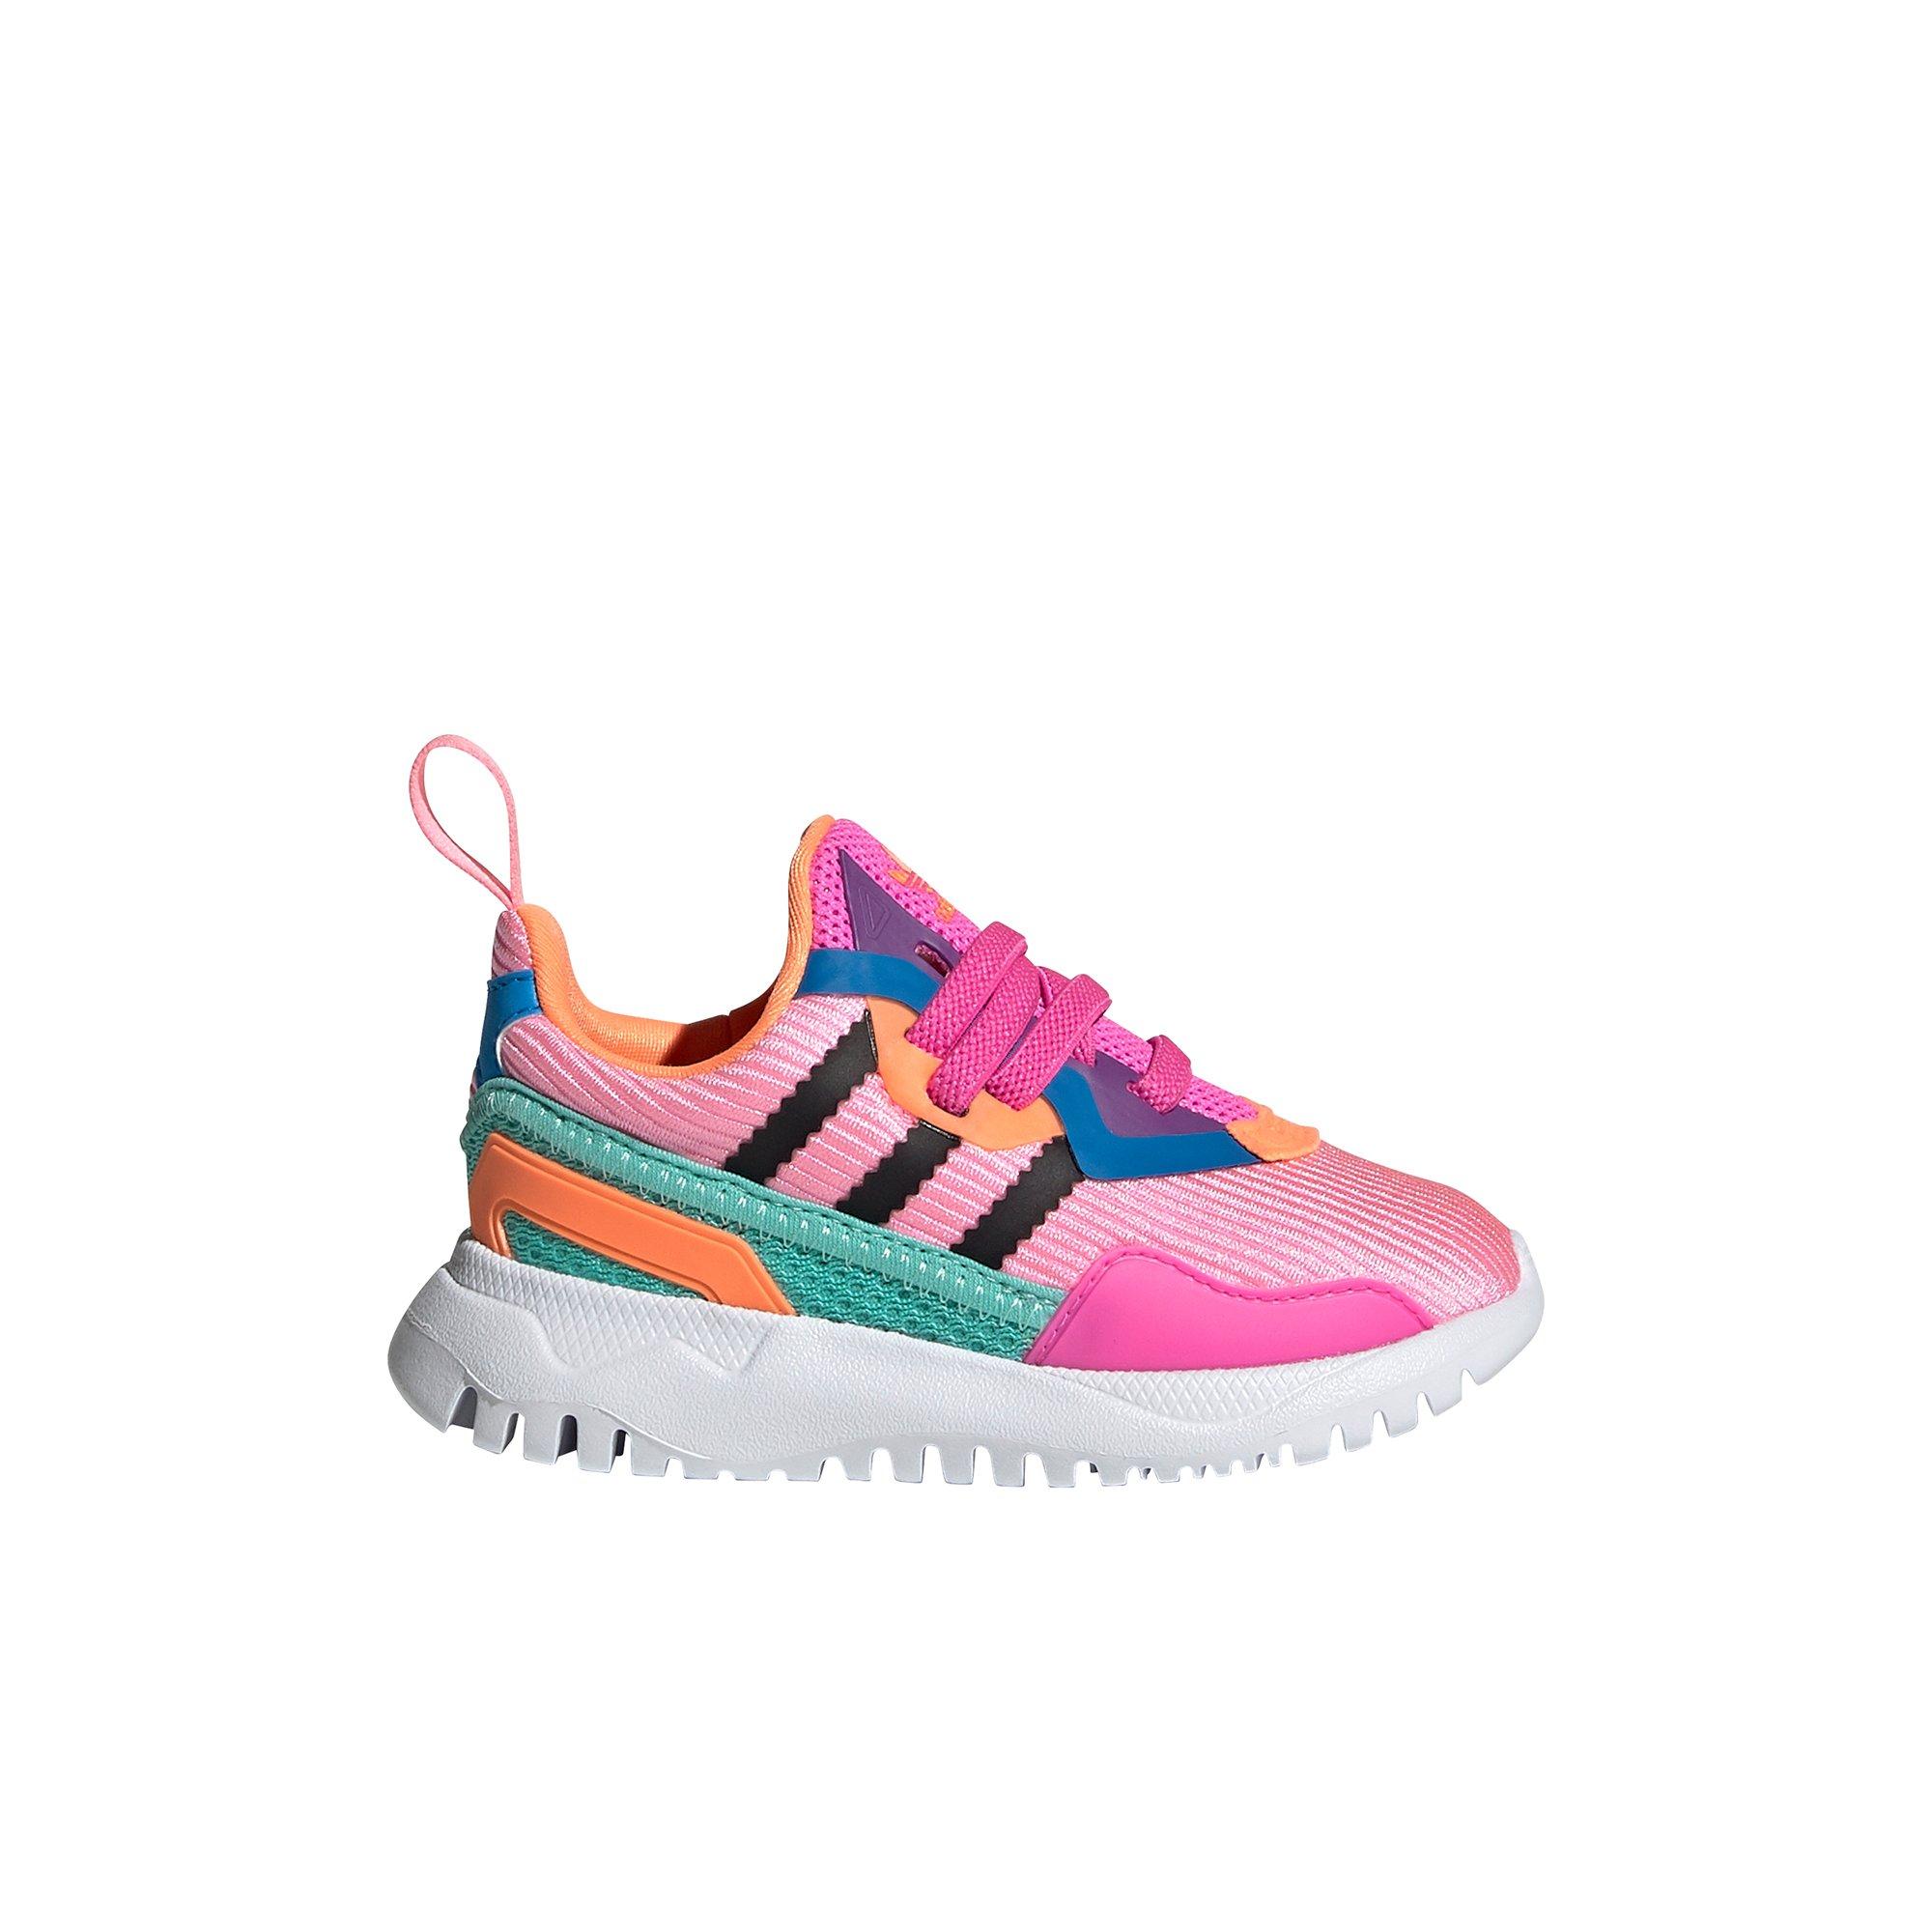 Haalbaar het spoor Logisch adidas Flex Run "Pink/Black/Orange" Toddler Girls' Shoe